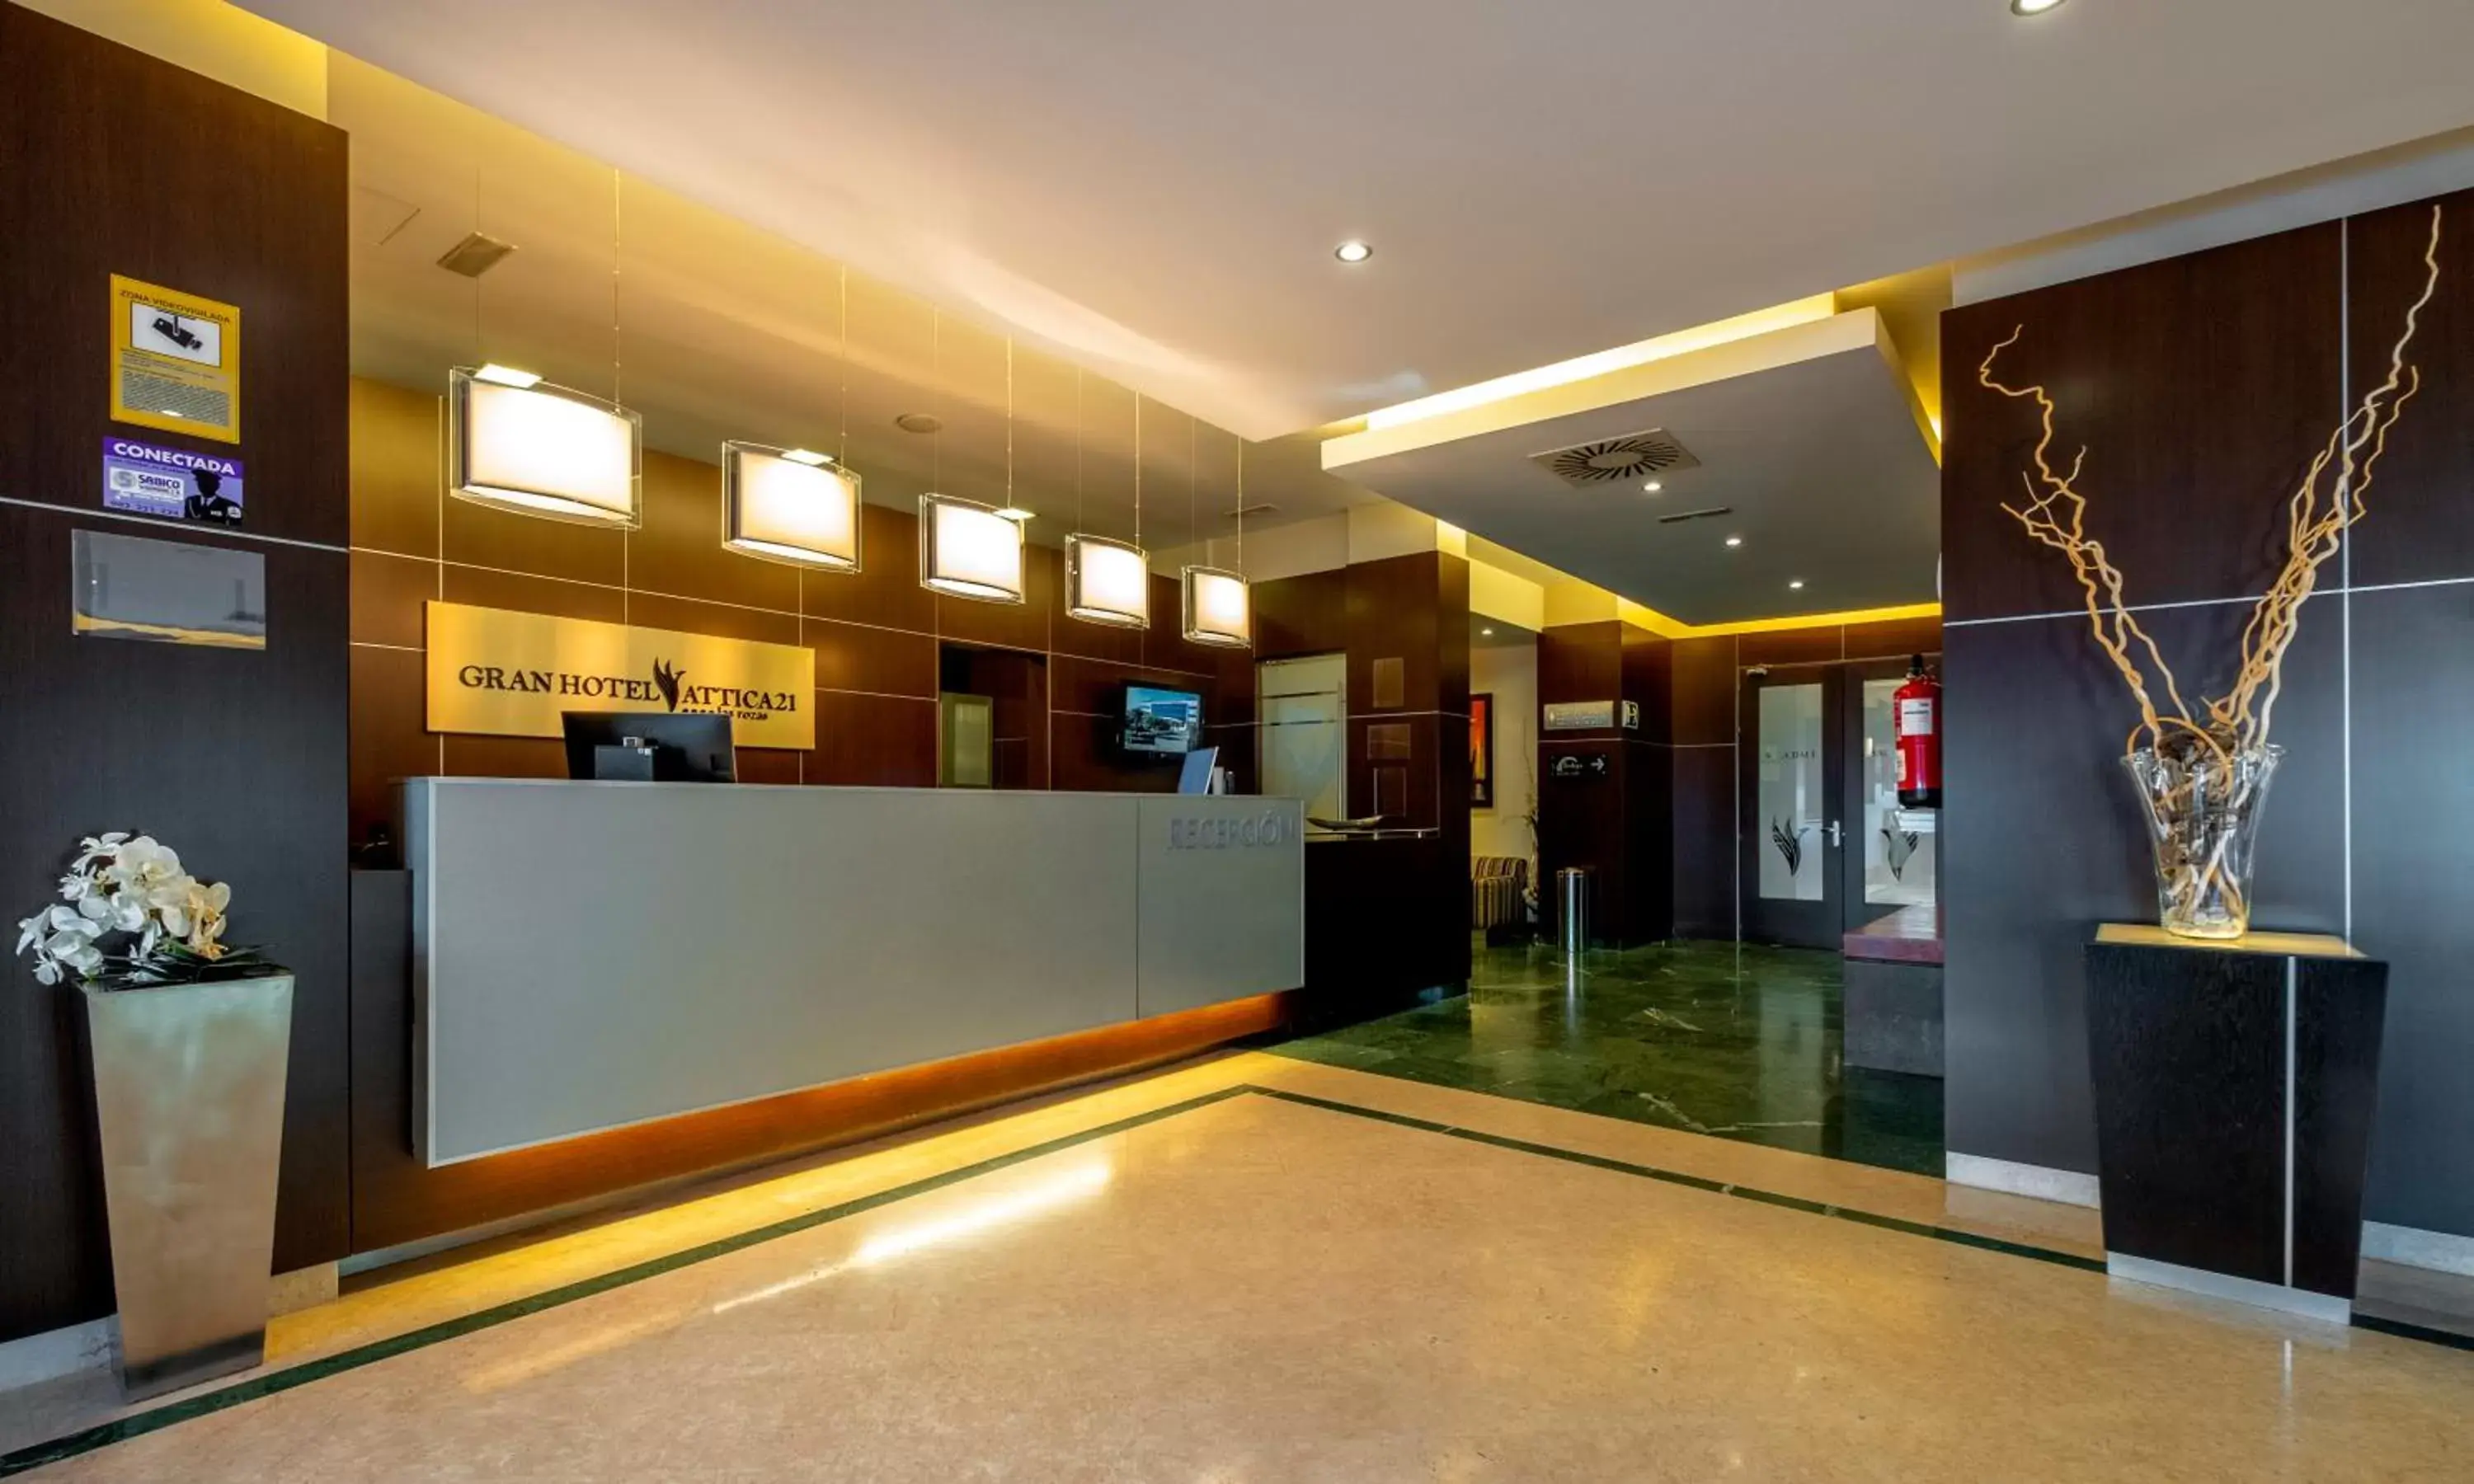 Lobby or reception, Lobby/Reception in Gran Hotel Attica21 Las Rozas